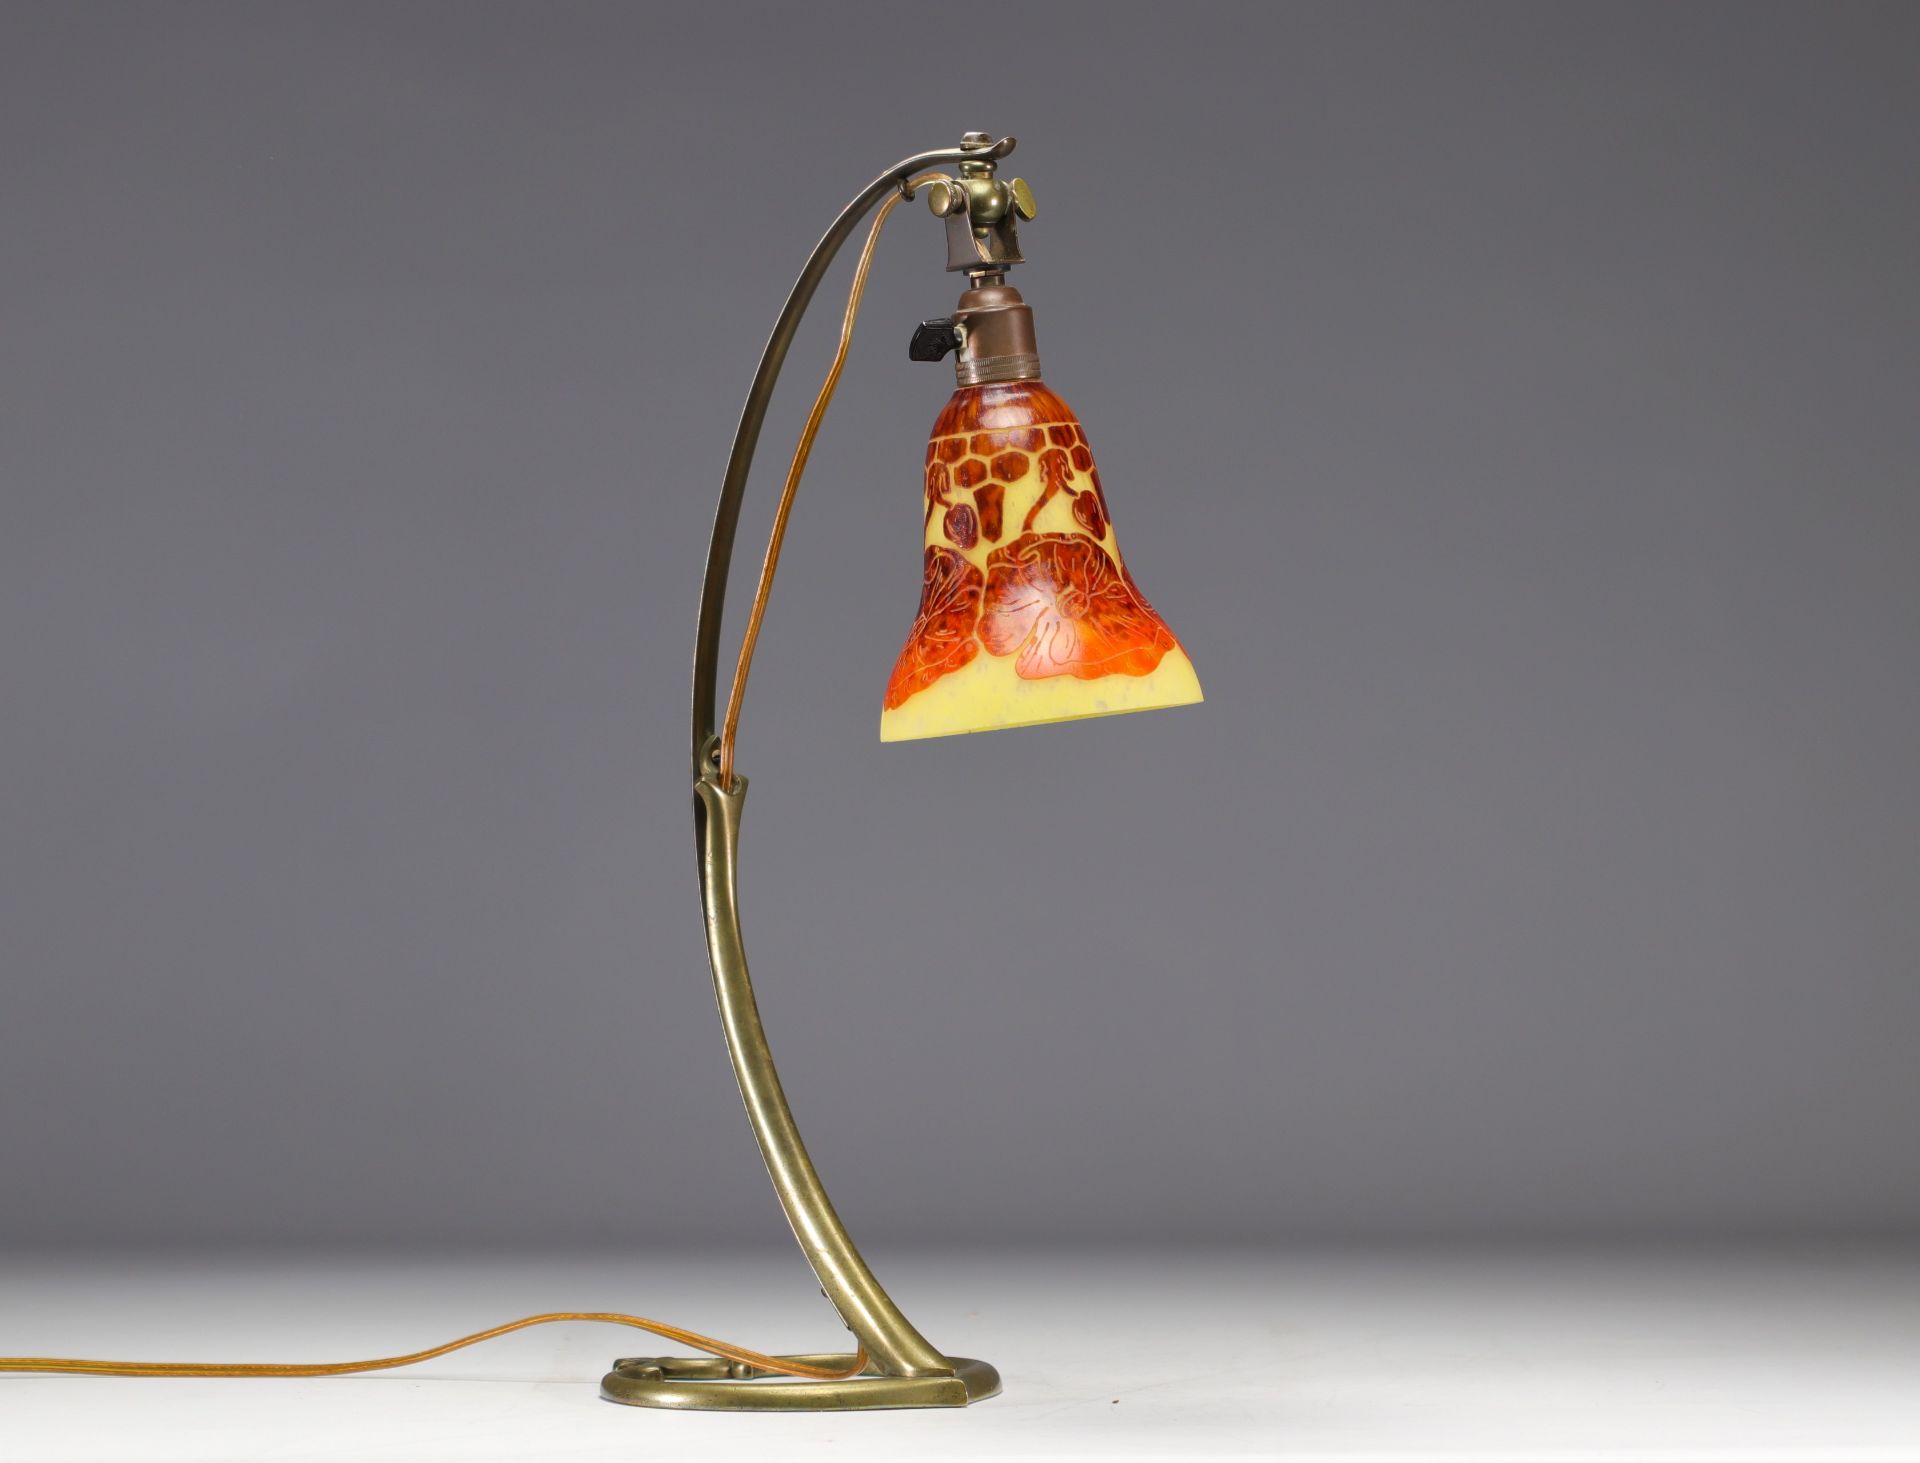 Art Nouveau bronze lamp with acid-etched tulip "Le Verre Francais" - Image 3 of 4